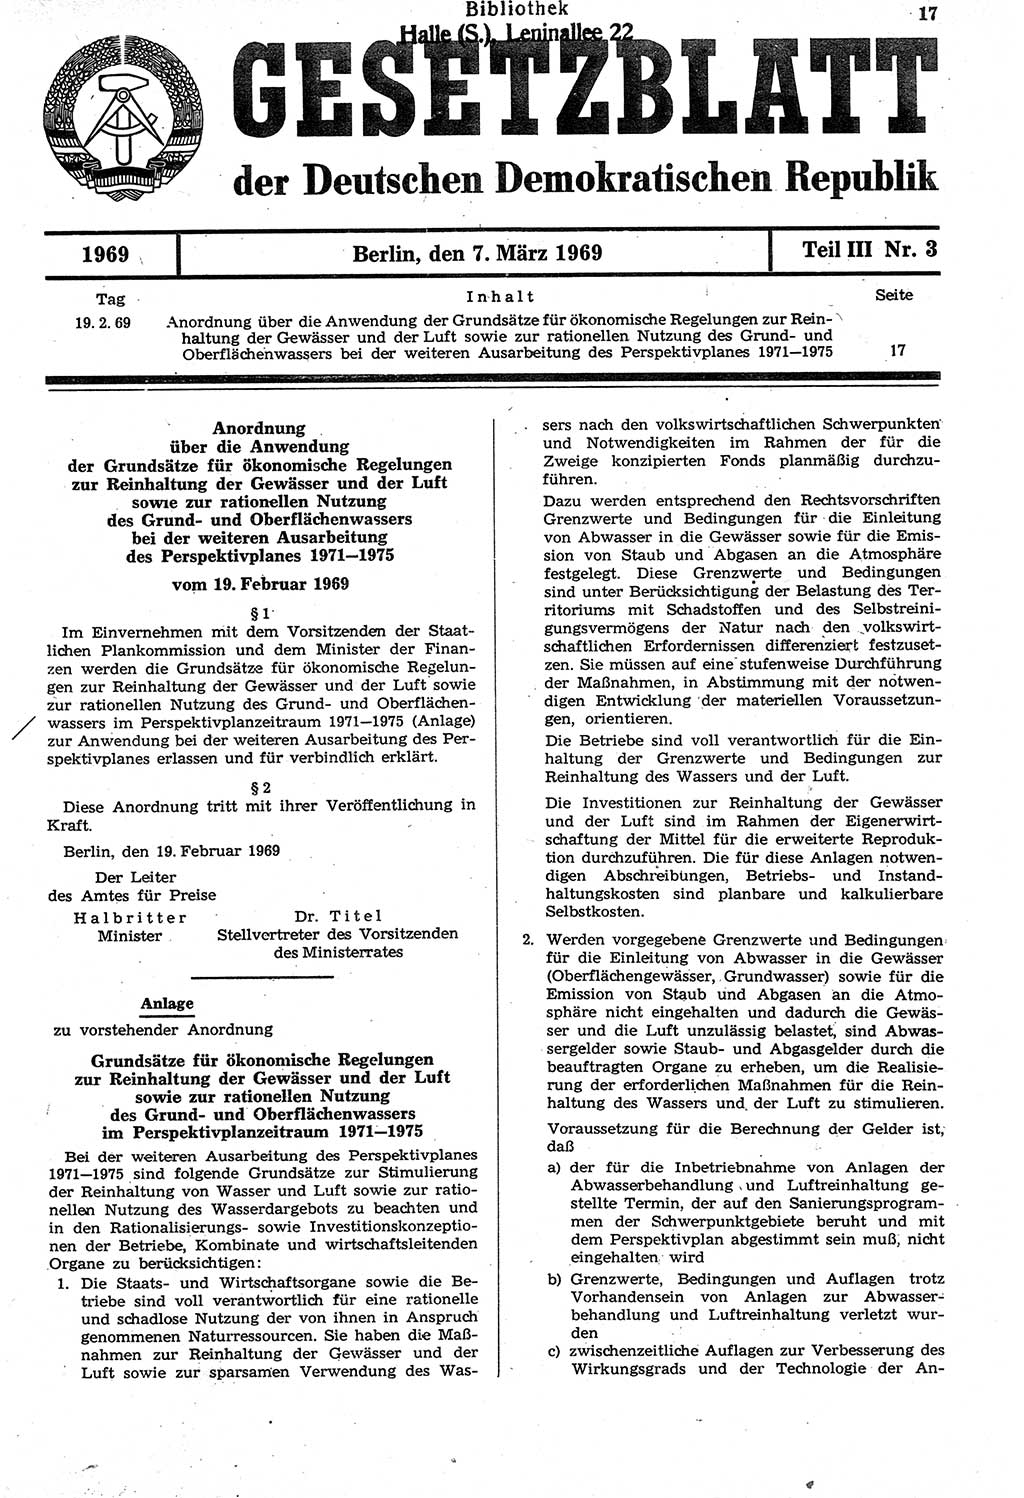 Gesetzblatt (GBl.) der Deutschen Demokratischen Republik (DDR) Teil ⅠⅠⅠ 1969, Seite 17 (GBl. DDR ⅠⅠⅠ 1969, S. 17)